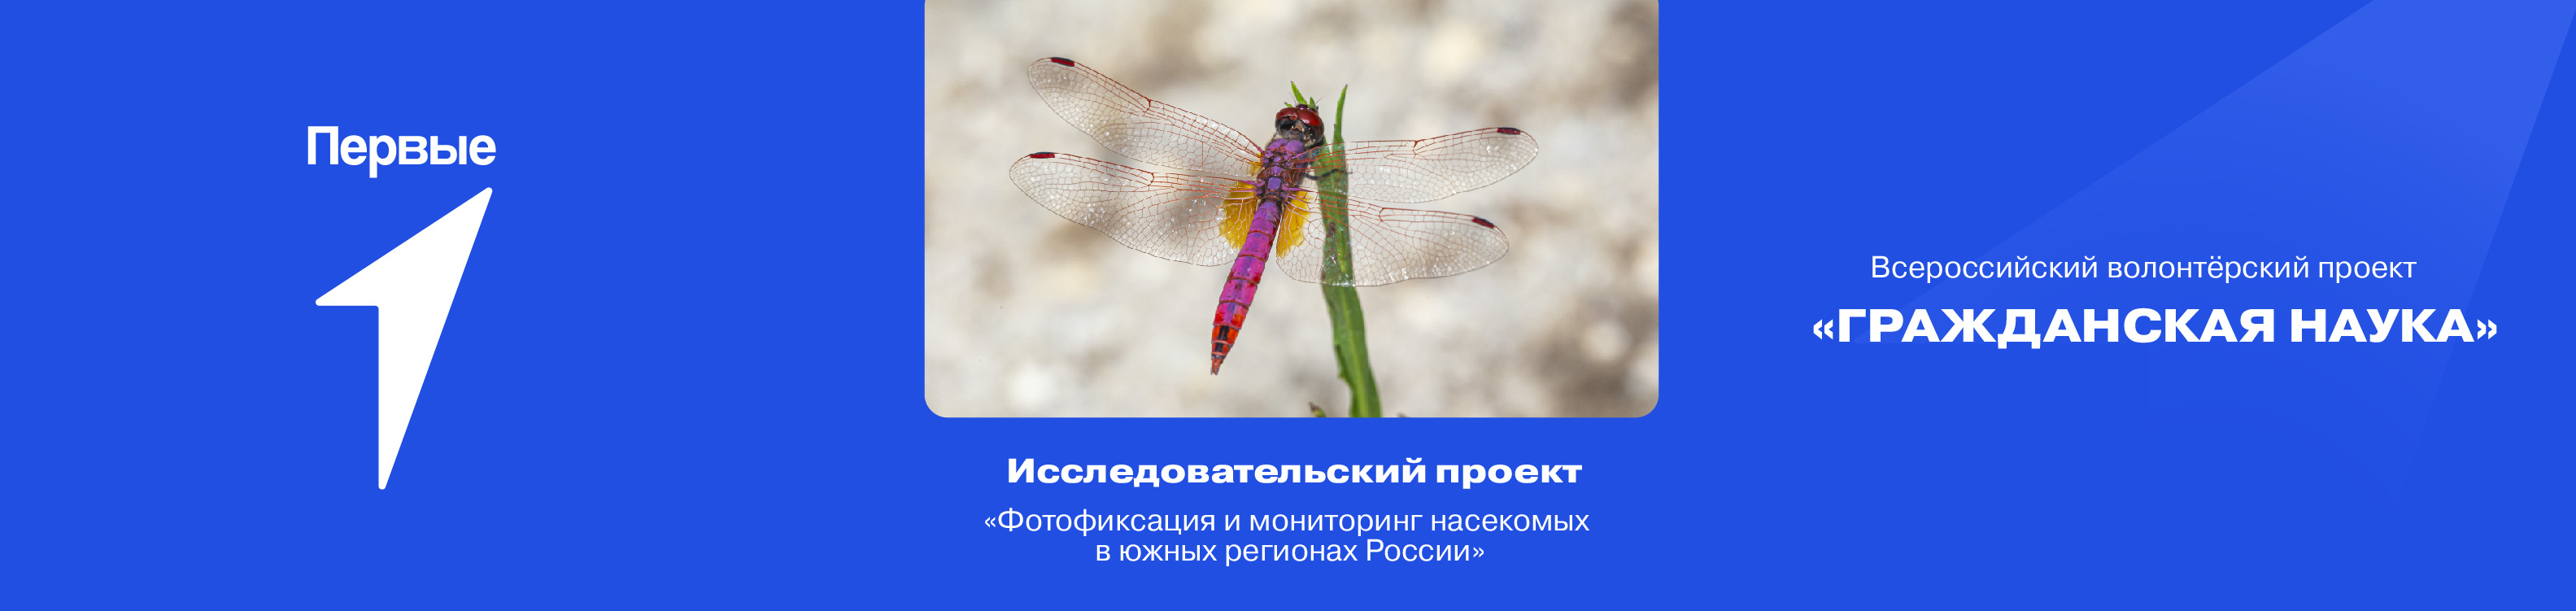 «Фотофиксация и мониторинг насекомых в южных регионах России»